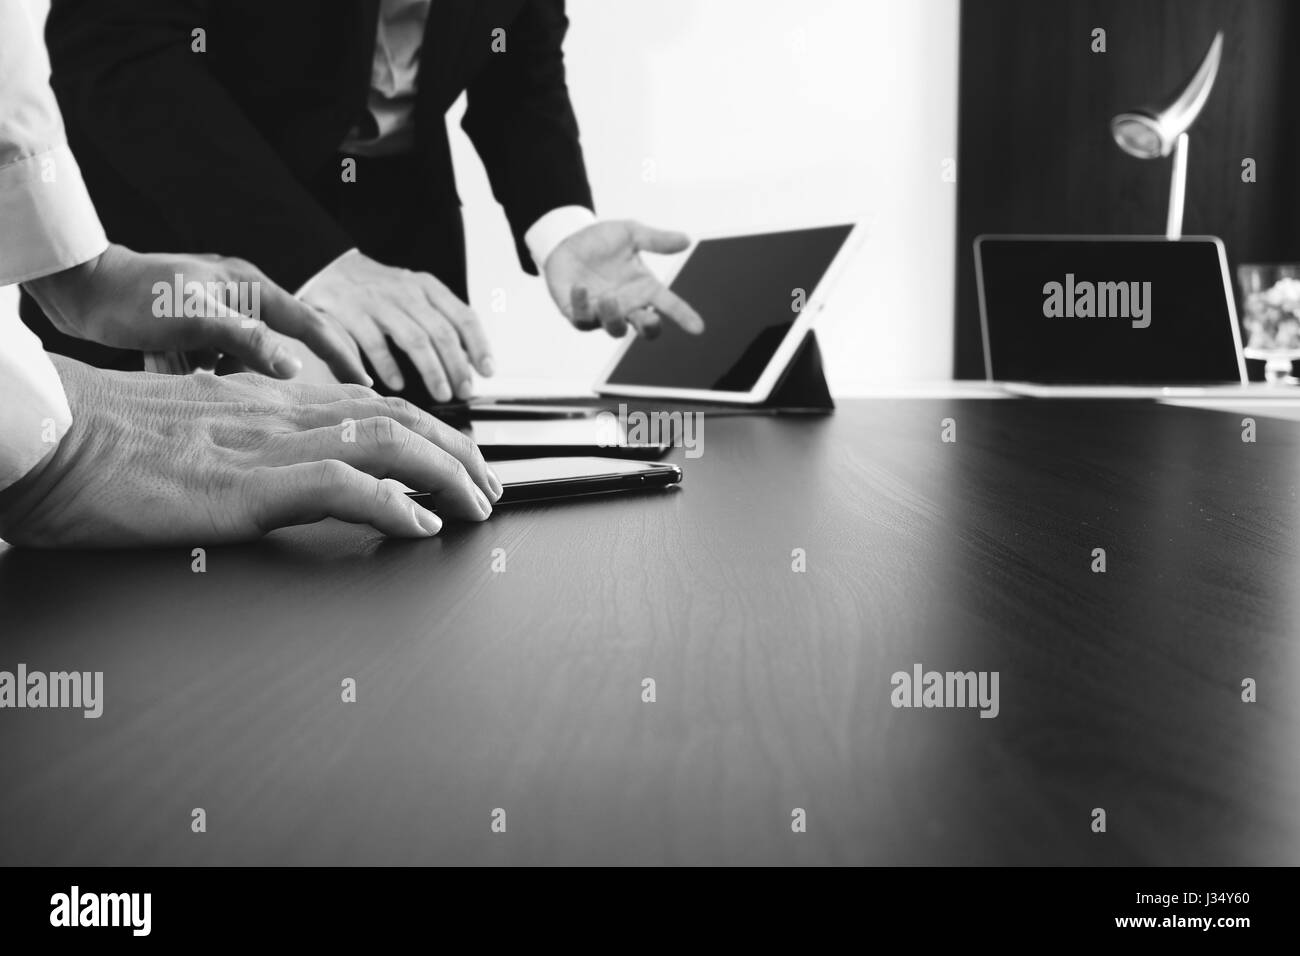 La réunion de l'équipe de travail concept,businessman using smart phone et tablette numérique et votre ordinateur de bureau moderne en noir et blanc, Banque D'Images